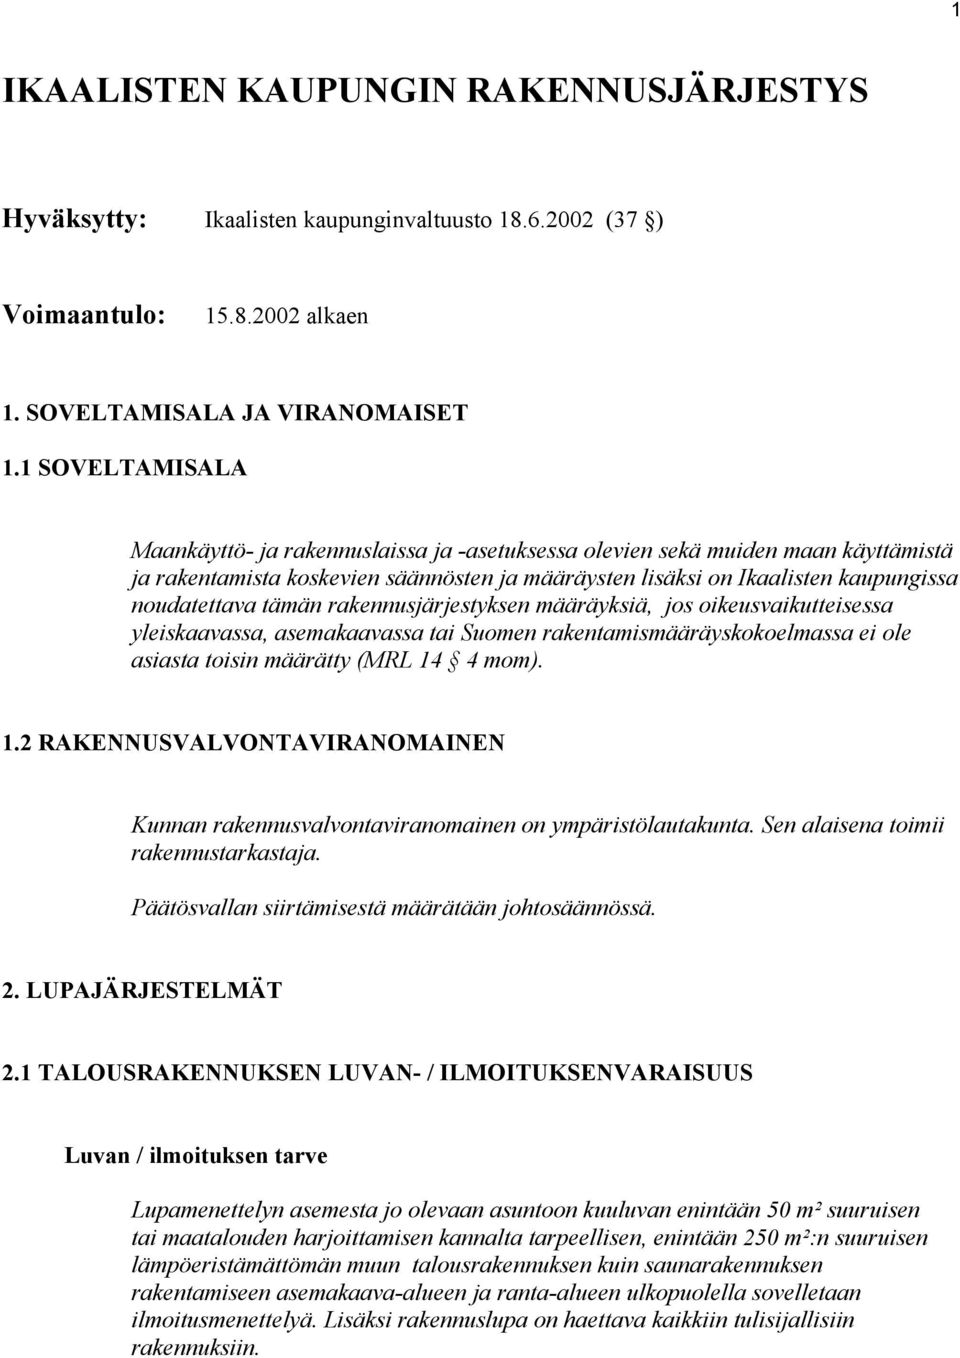 tämän rakennusjärjestyksen määräyksiä, jos oikeusvaikutteisessa yleiskaavassa, asemakaavassa tai Suomen rakentamismääräyskokoelmassa ei ole asiasta toisin määrätty (MRL 14